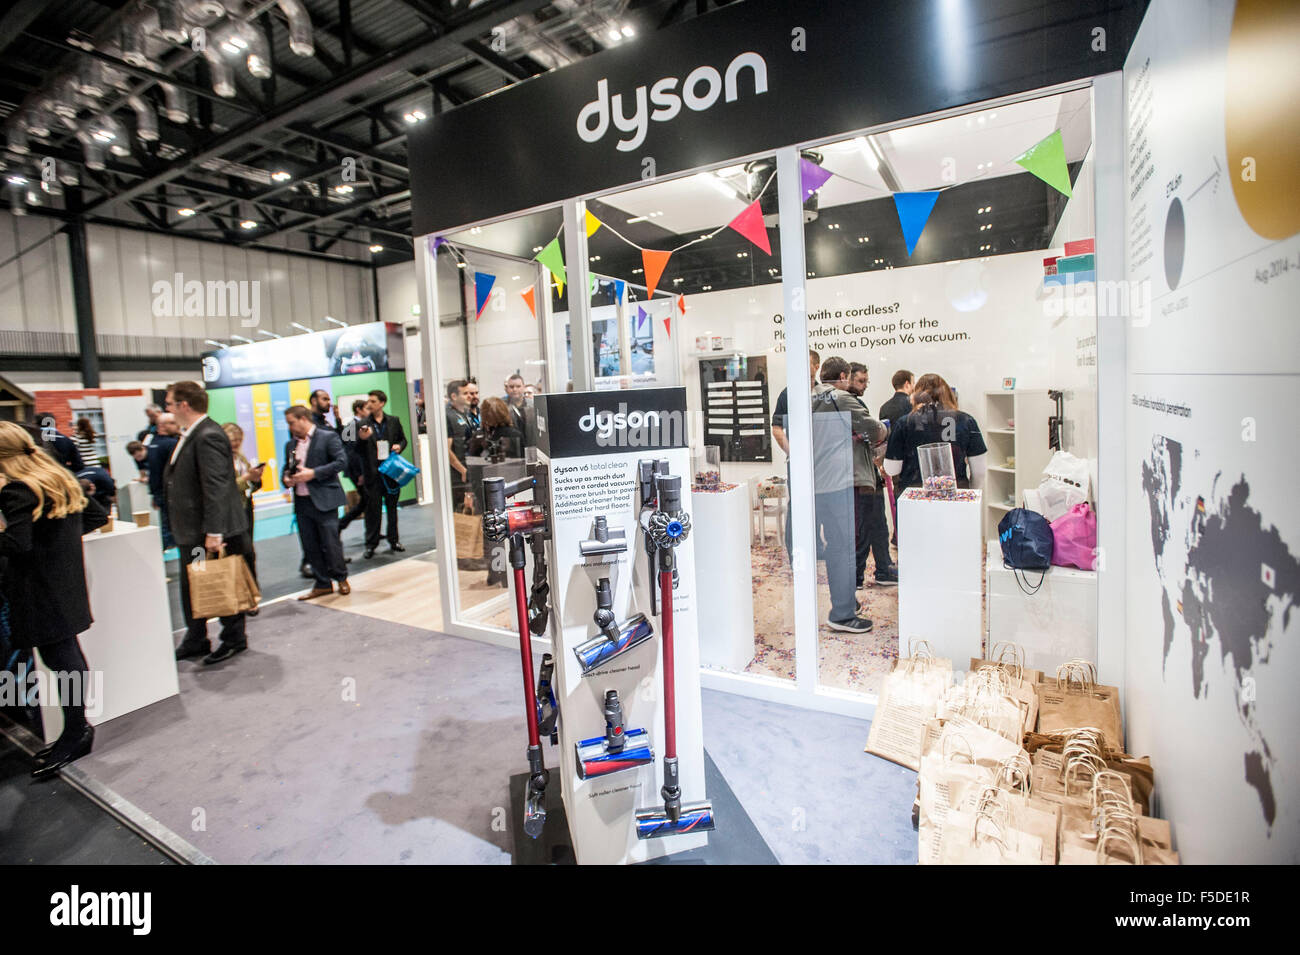 V6 Dyson aspirateur sans fil ' les plus puissantes au monde, cordless vacuum' en cours de démonstration à Dixons Retail Automne Carphone, Excel l'événement Banque D'Images